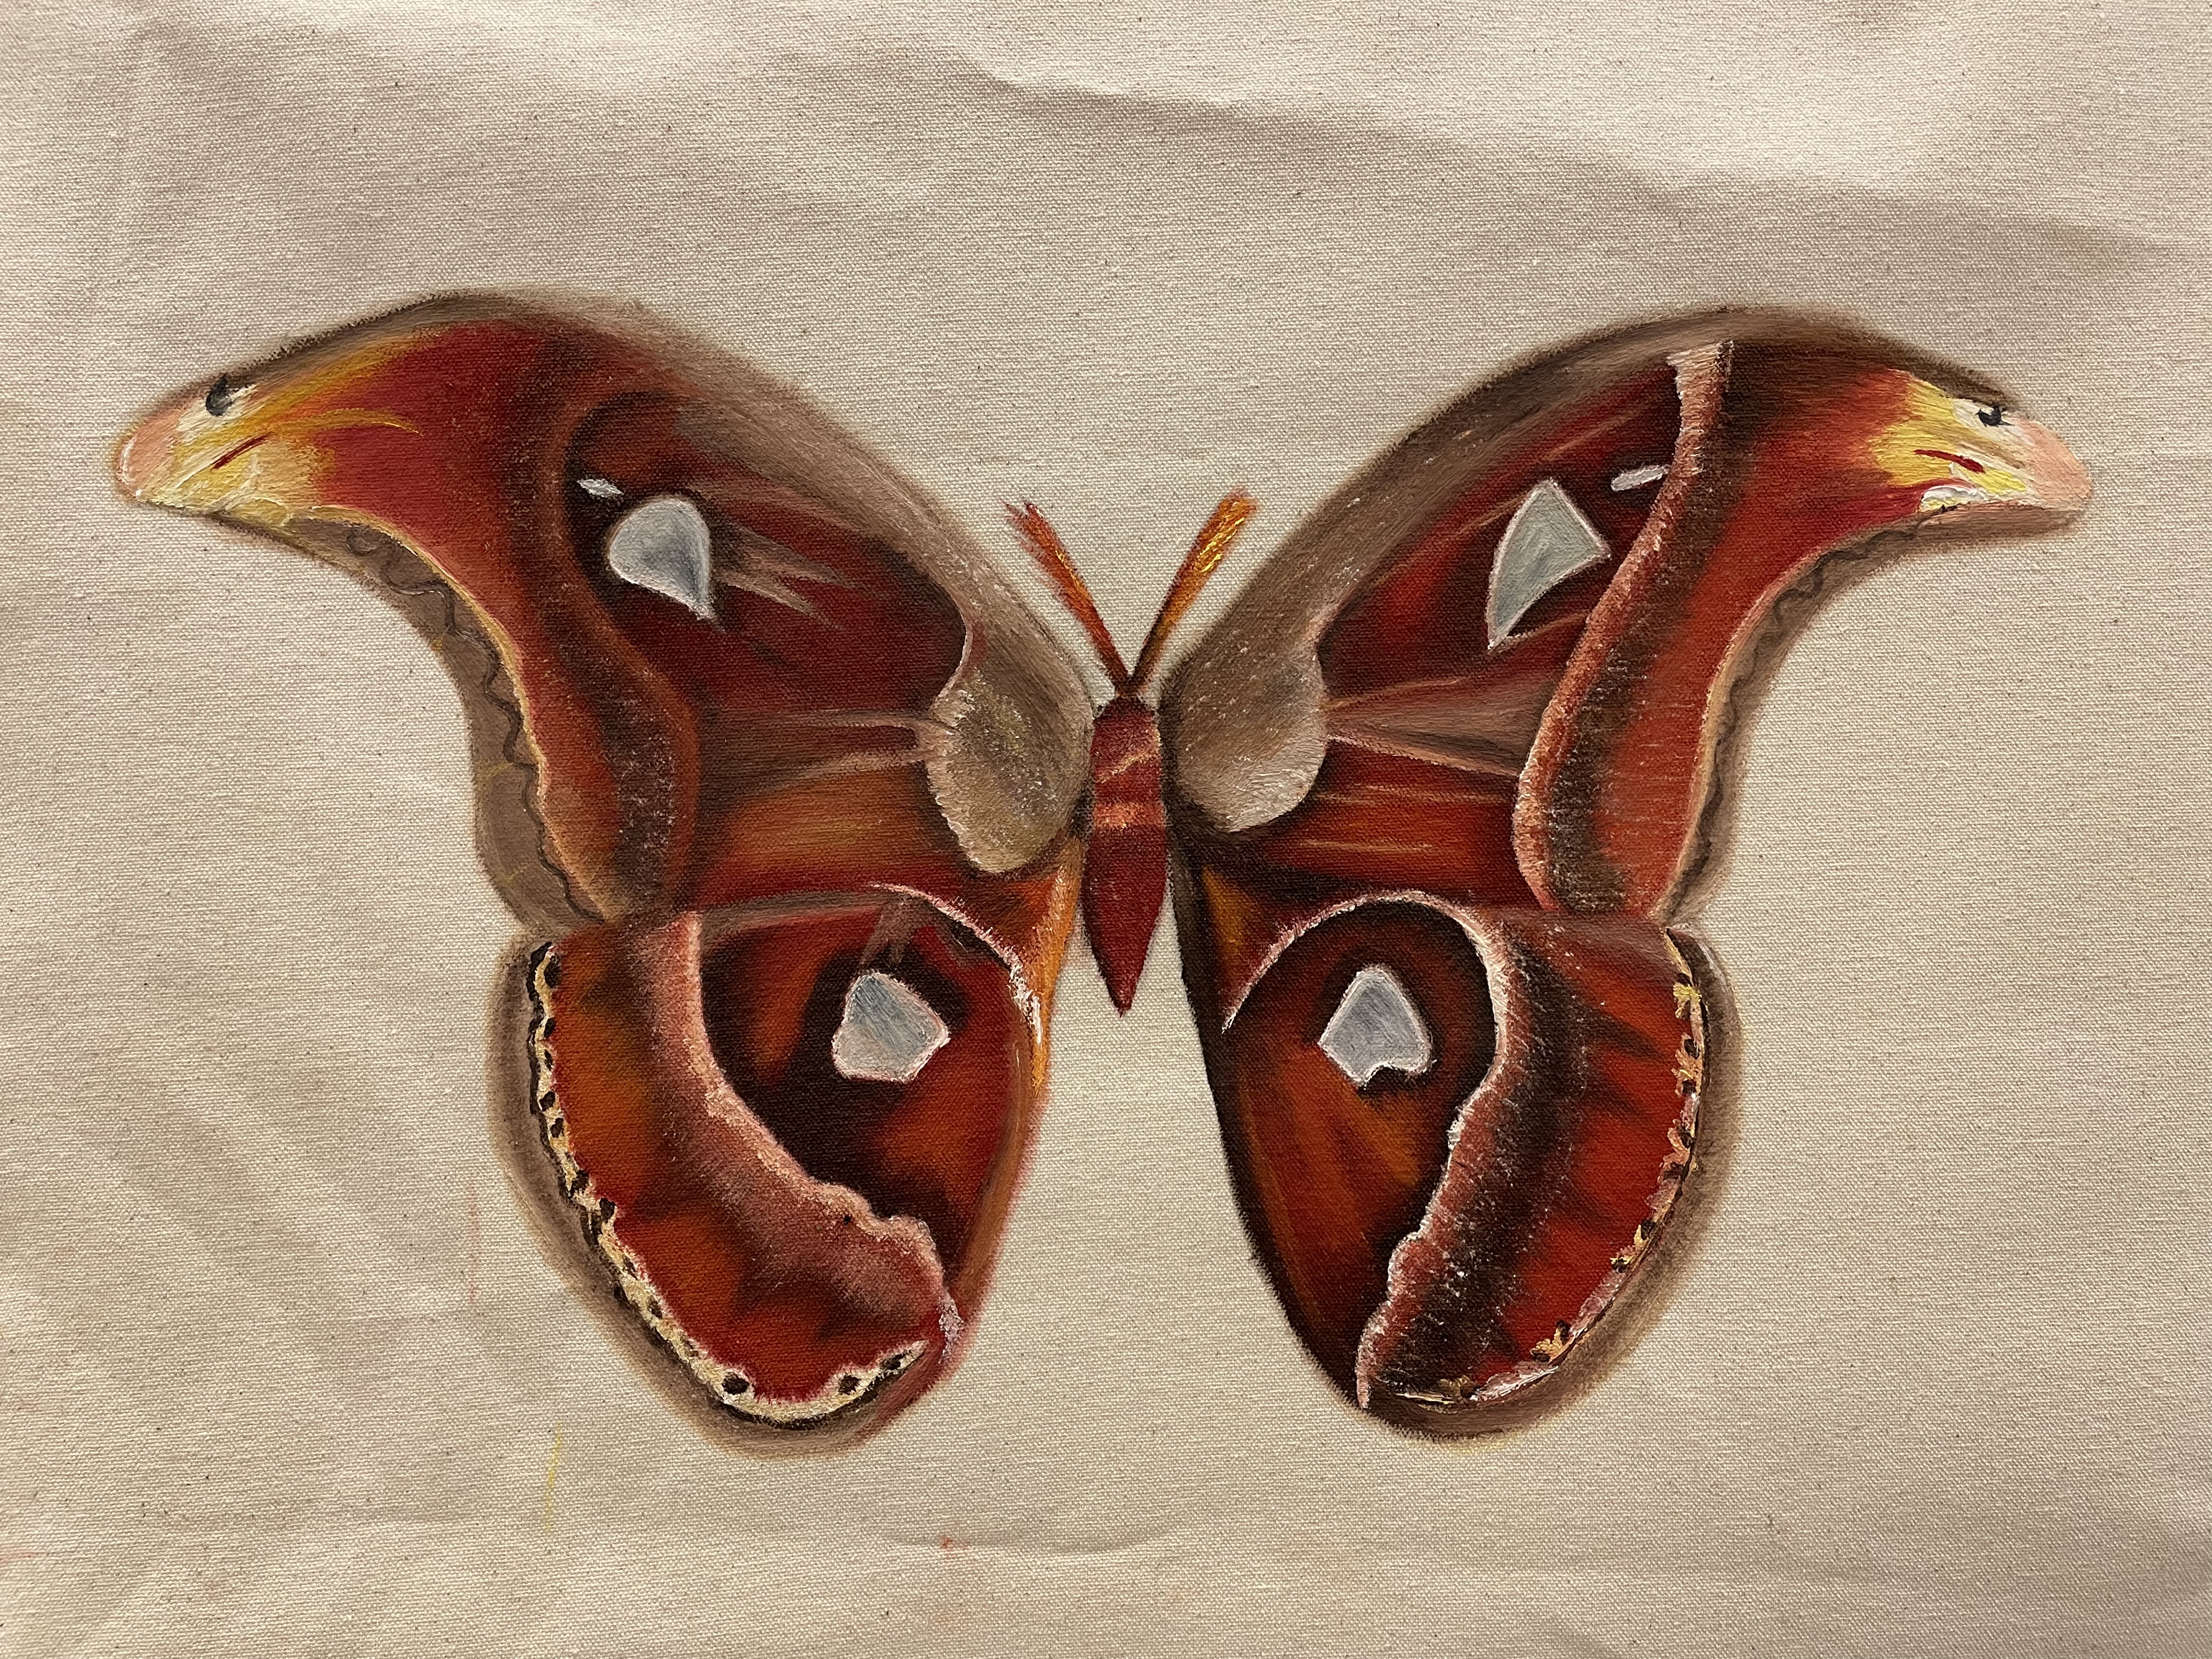 UNIT 1 CSM - Atlas Moth. Oil paint on unprimed, unstretched canvas